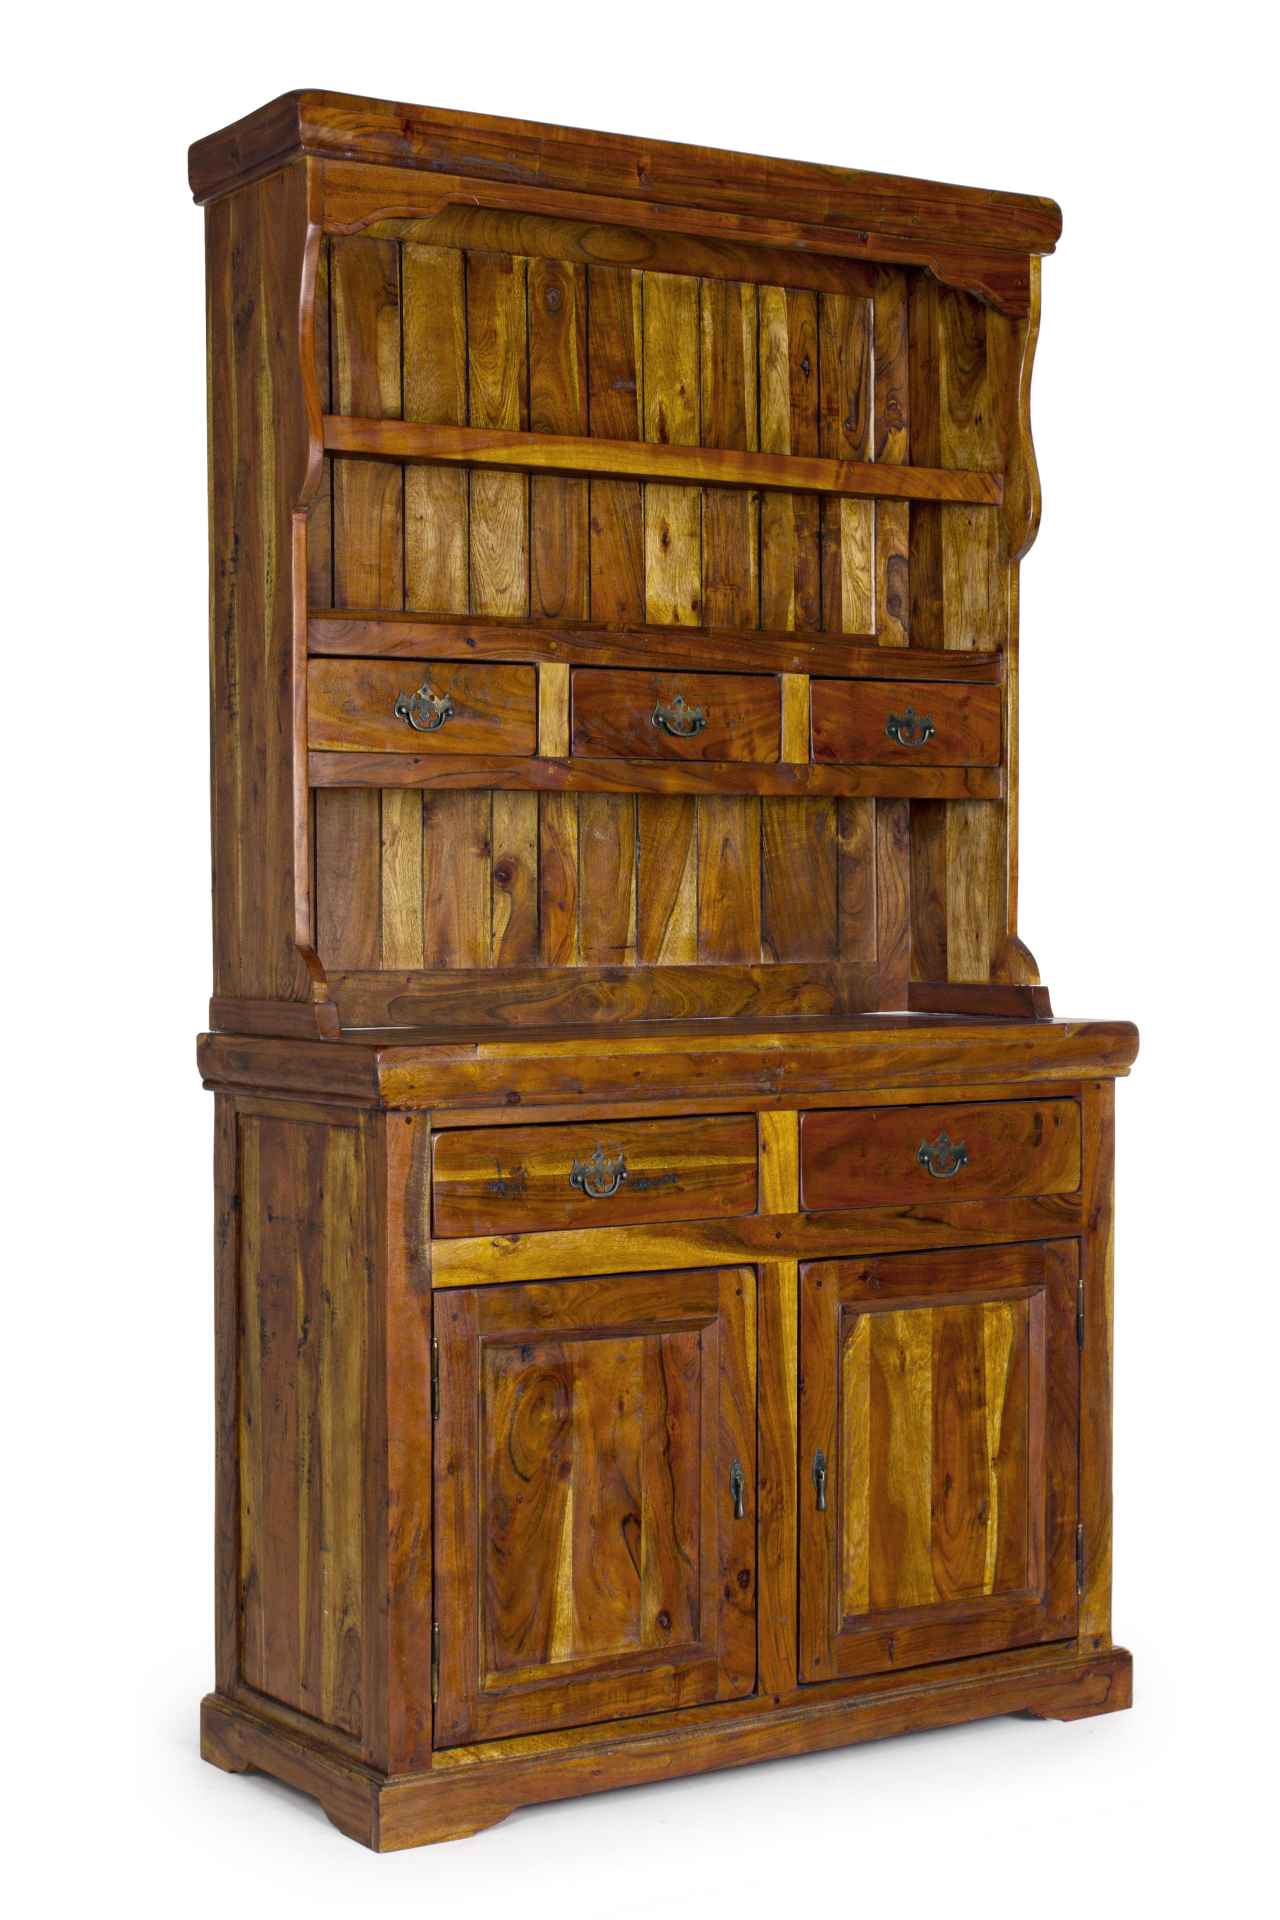 Der Schrank Chateaux überzeugt mit seinem klassischen Design. Gefertigt wurde er aus Akazien-Holz, welches einen natürlichen Farbton besitzt. Das Gestell ist auch aus Akazien-Holz. Der Schrank verfügt über zwei Türen und fünf Schubladen. Die Höhe beträgt 